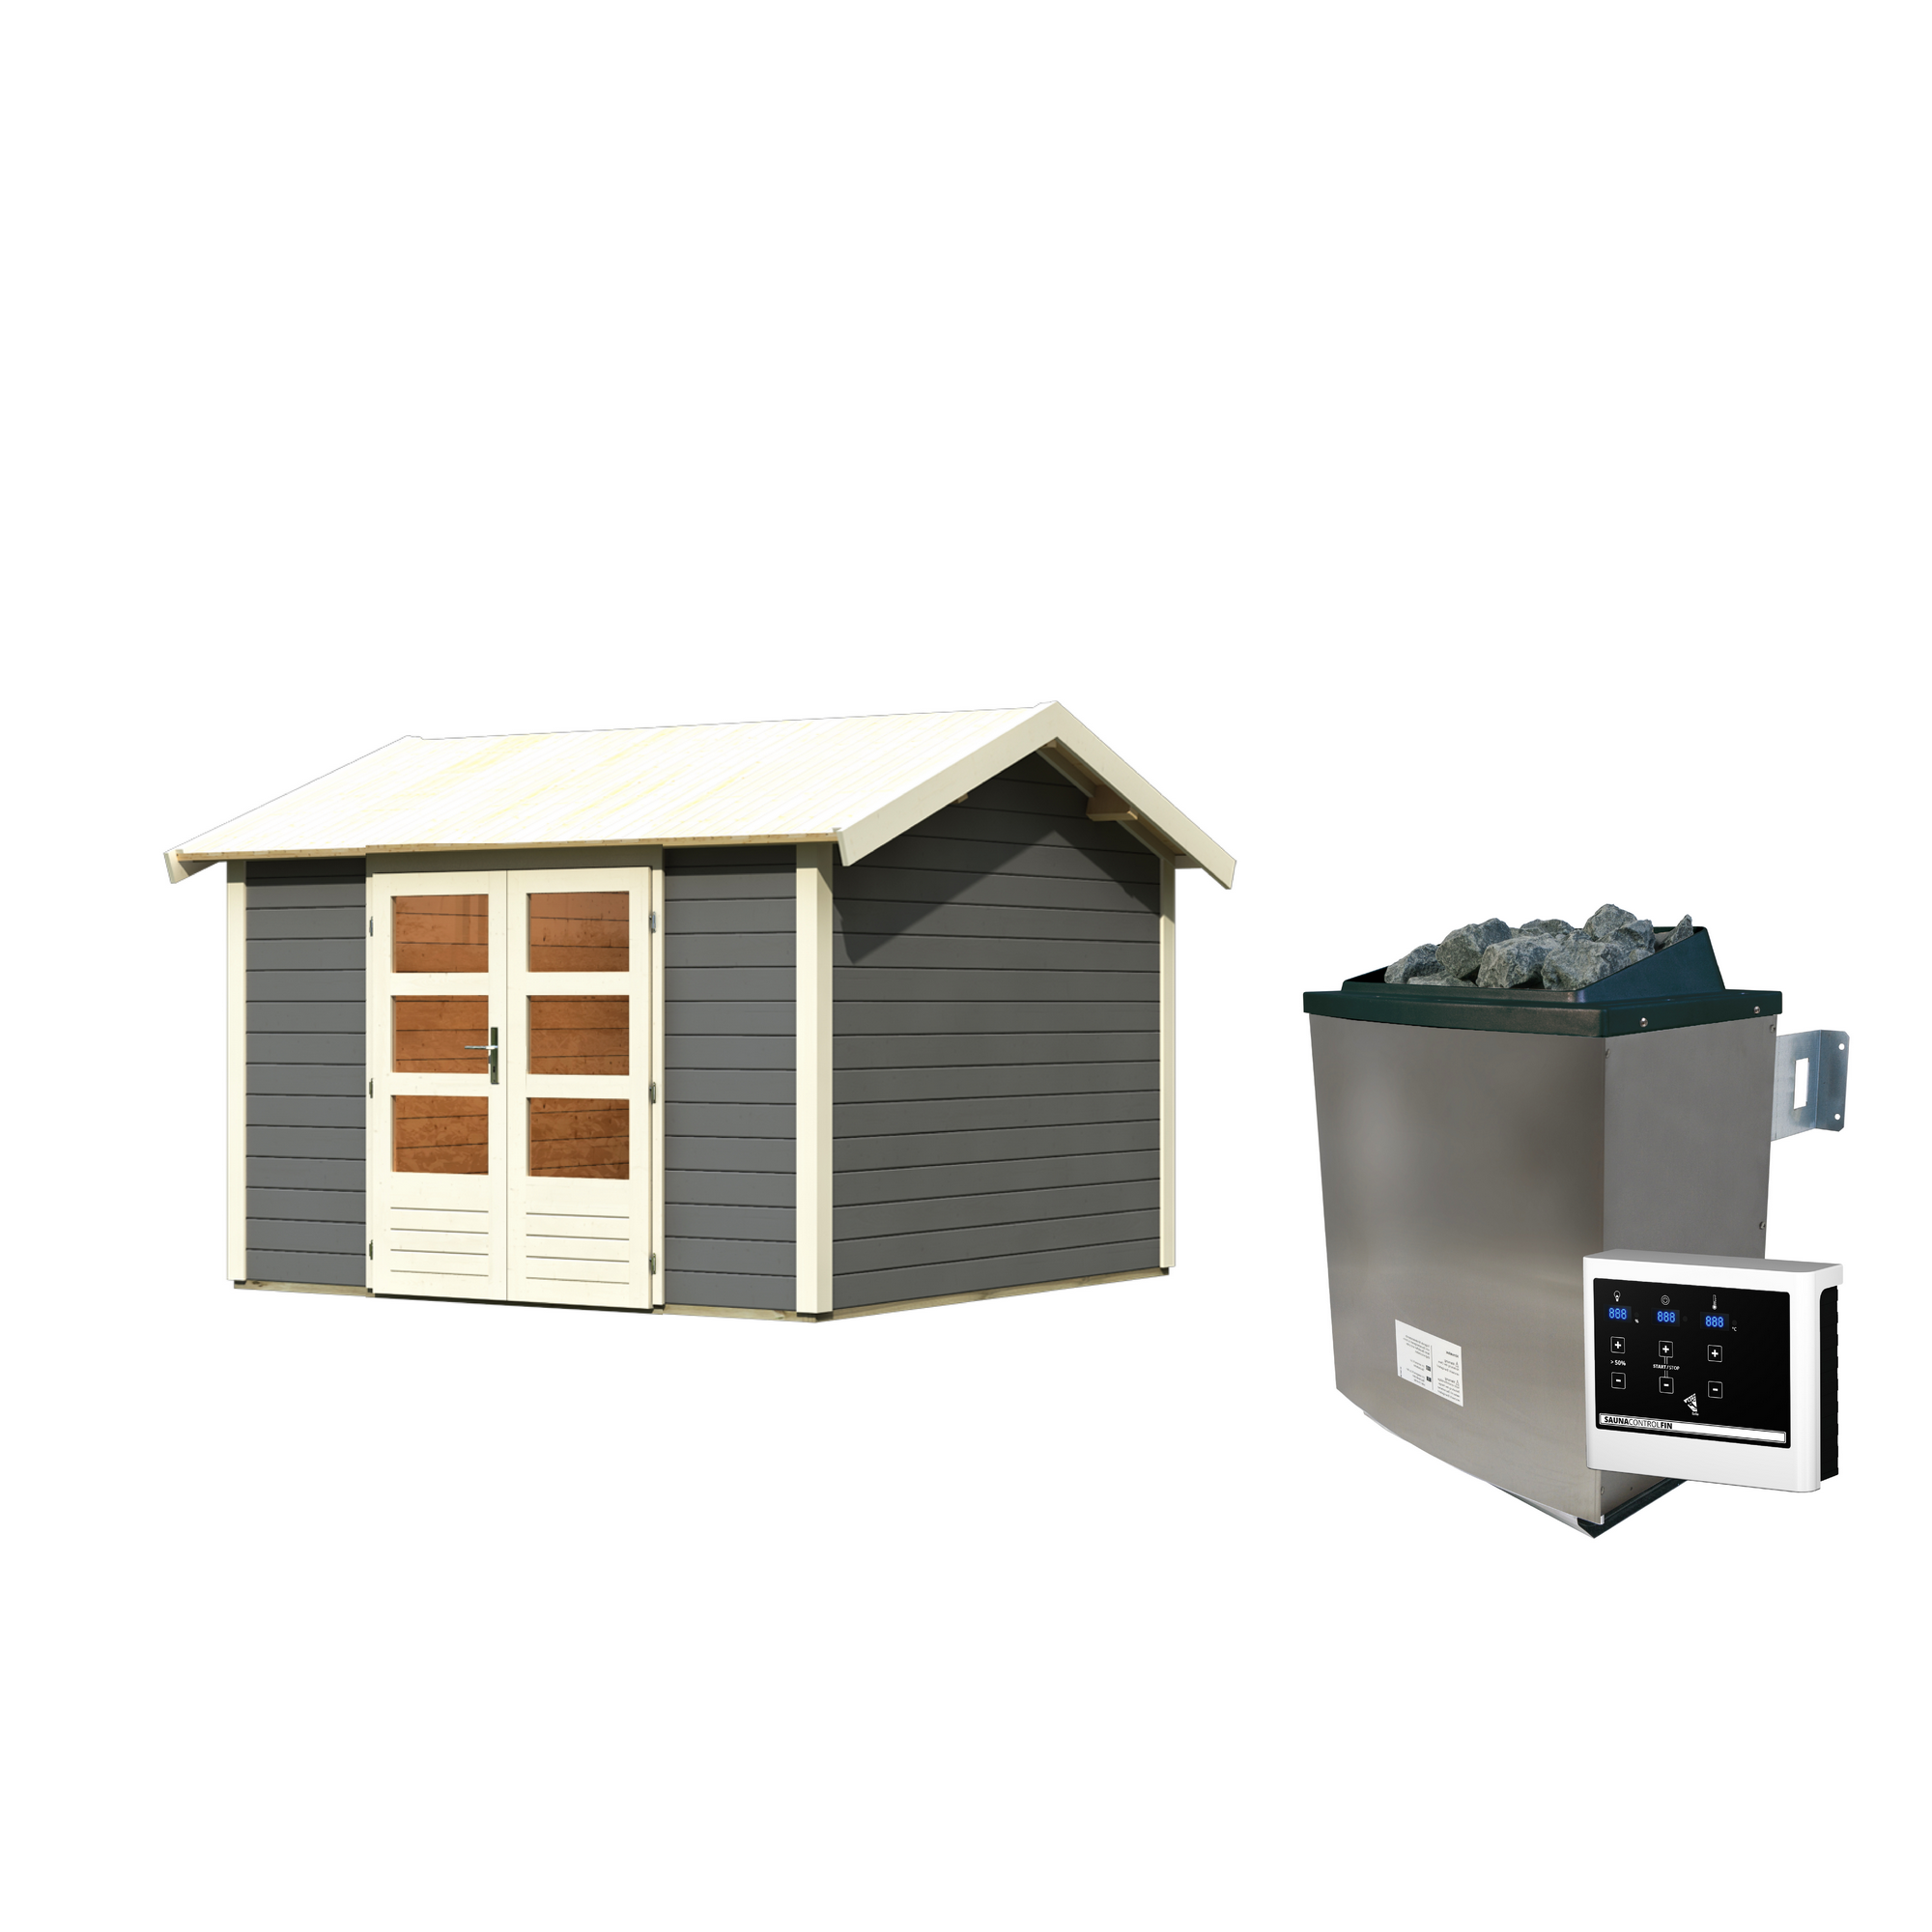 Gartenhaus mit Sauna 'Alberto' terragrau 9 kW Ofen externe Steuerung 304 x 304 x 250 cm + product picture